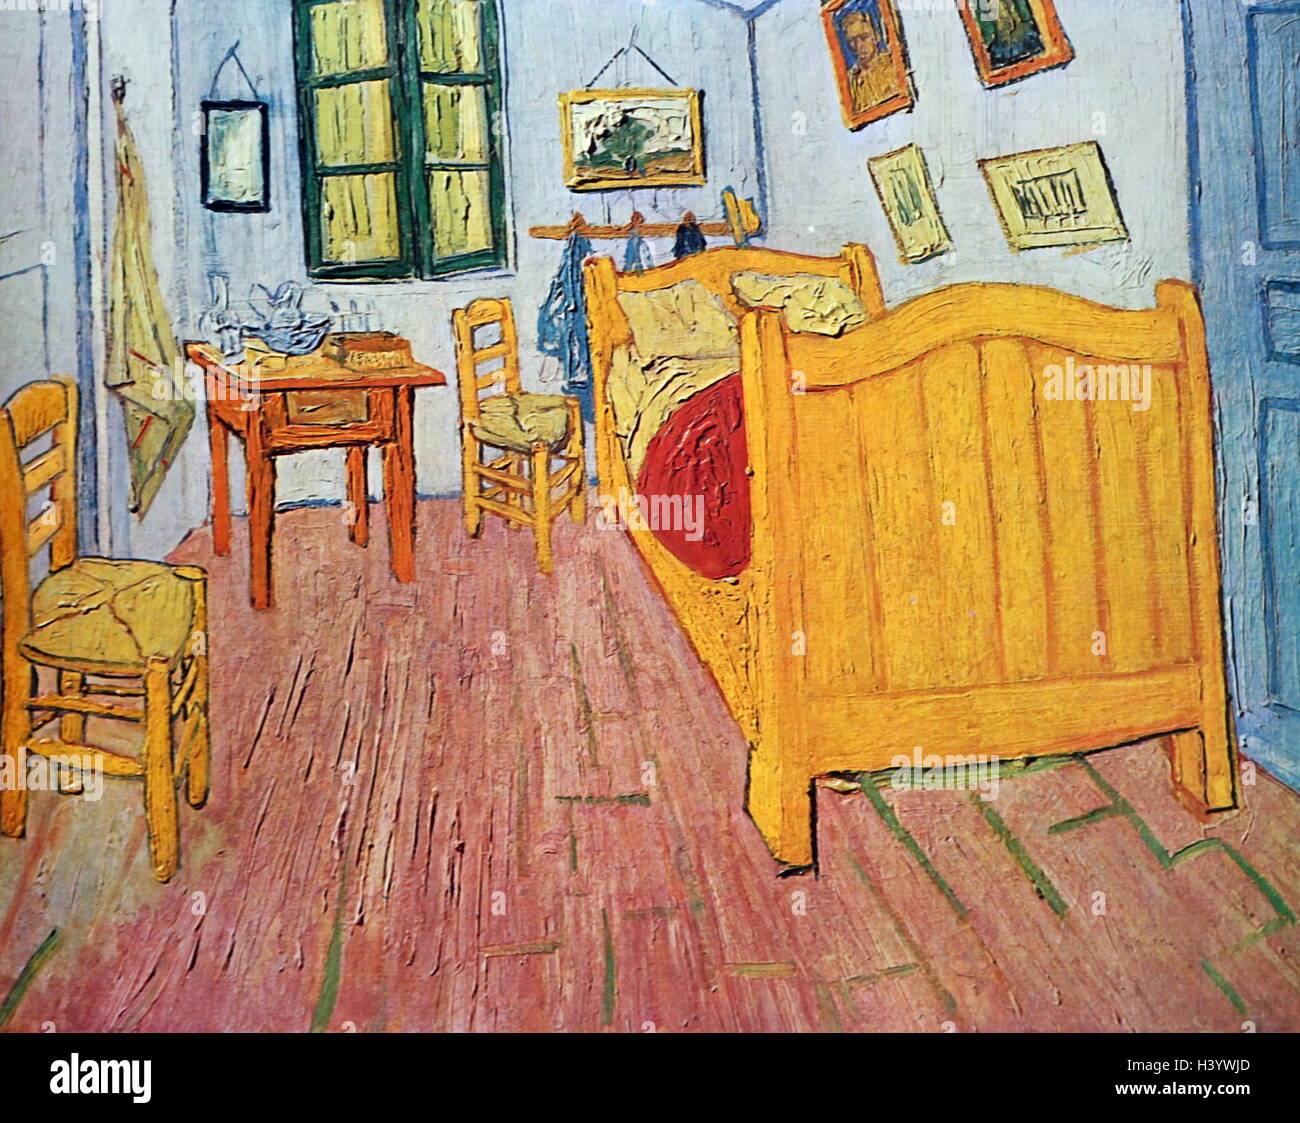 Gemälde mit dem Titel "Schlafzimmer in Arles" von Vincent Van Gogh (1853-1890) niederländische Post-Impressionisten Maler. Vom 19. Jahrhundert Stockfoto